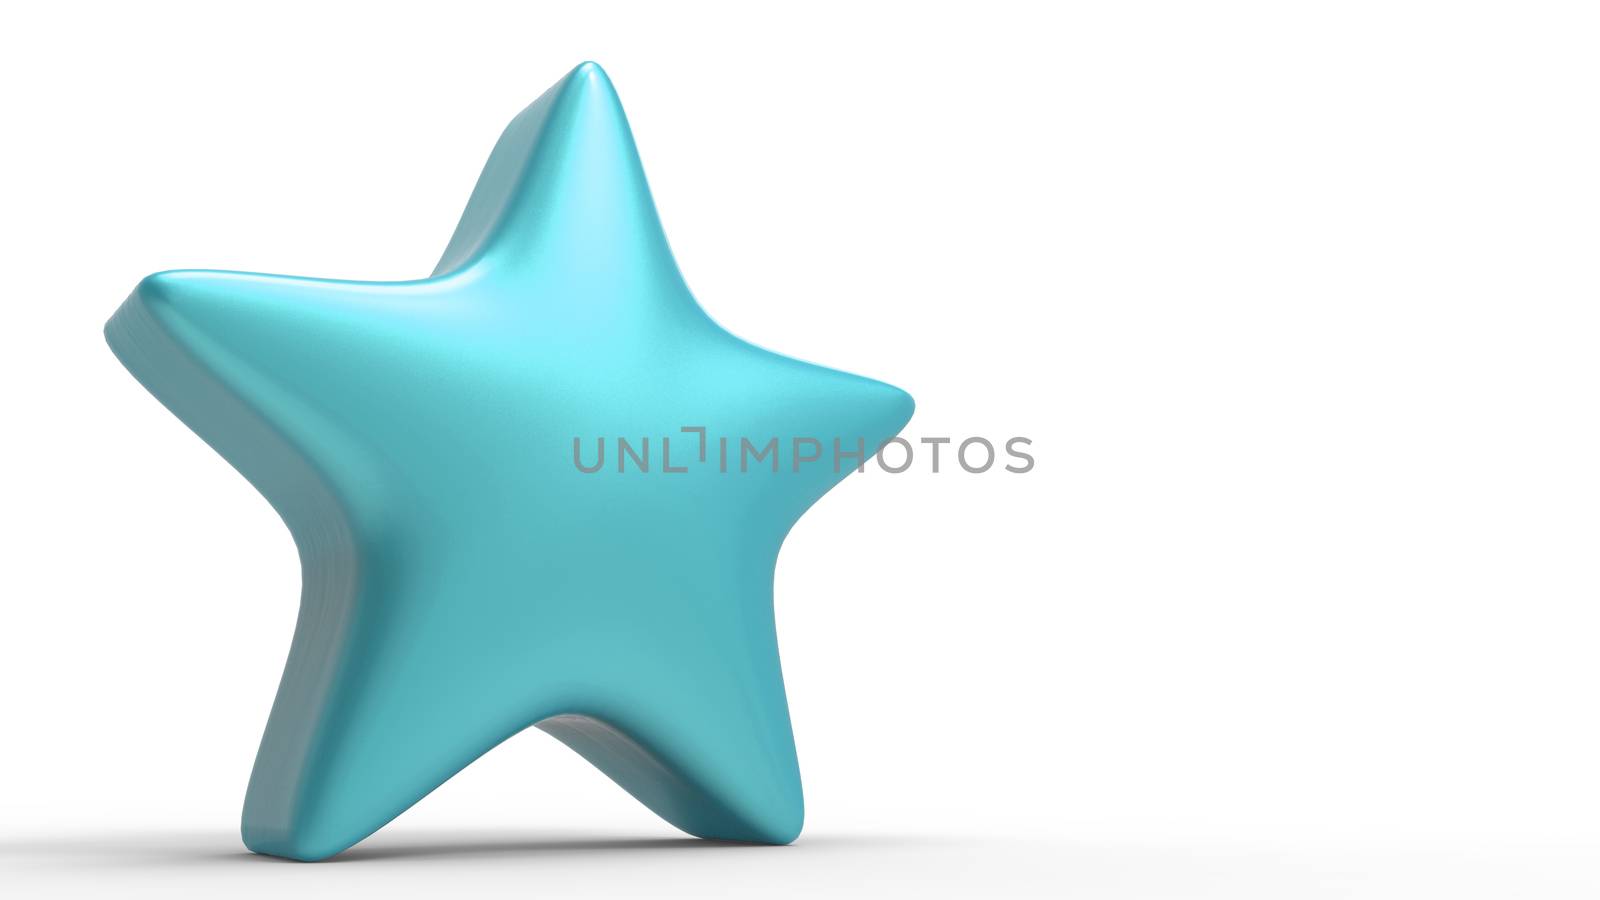 3d azure star on color background. Render and illustration of golden star for premium